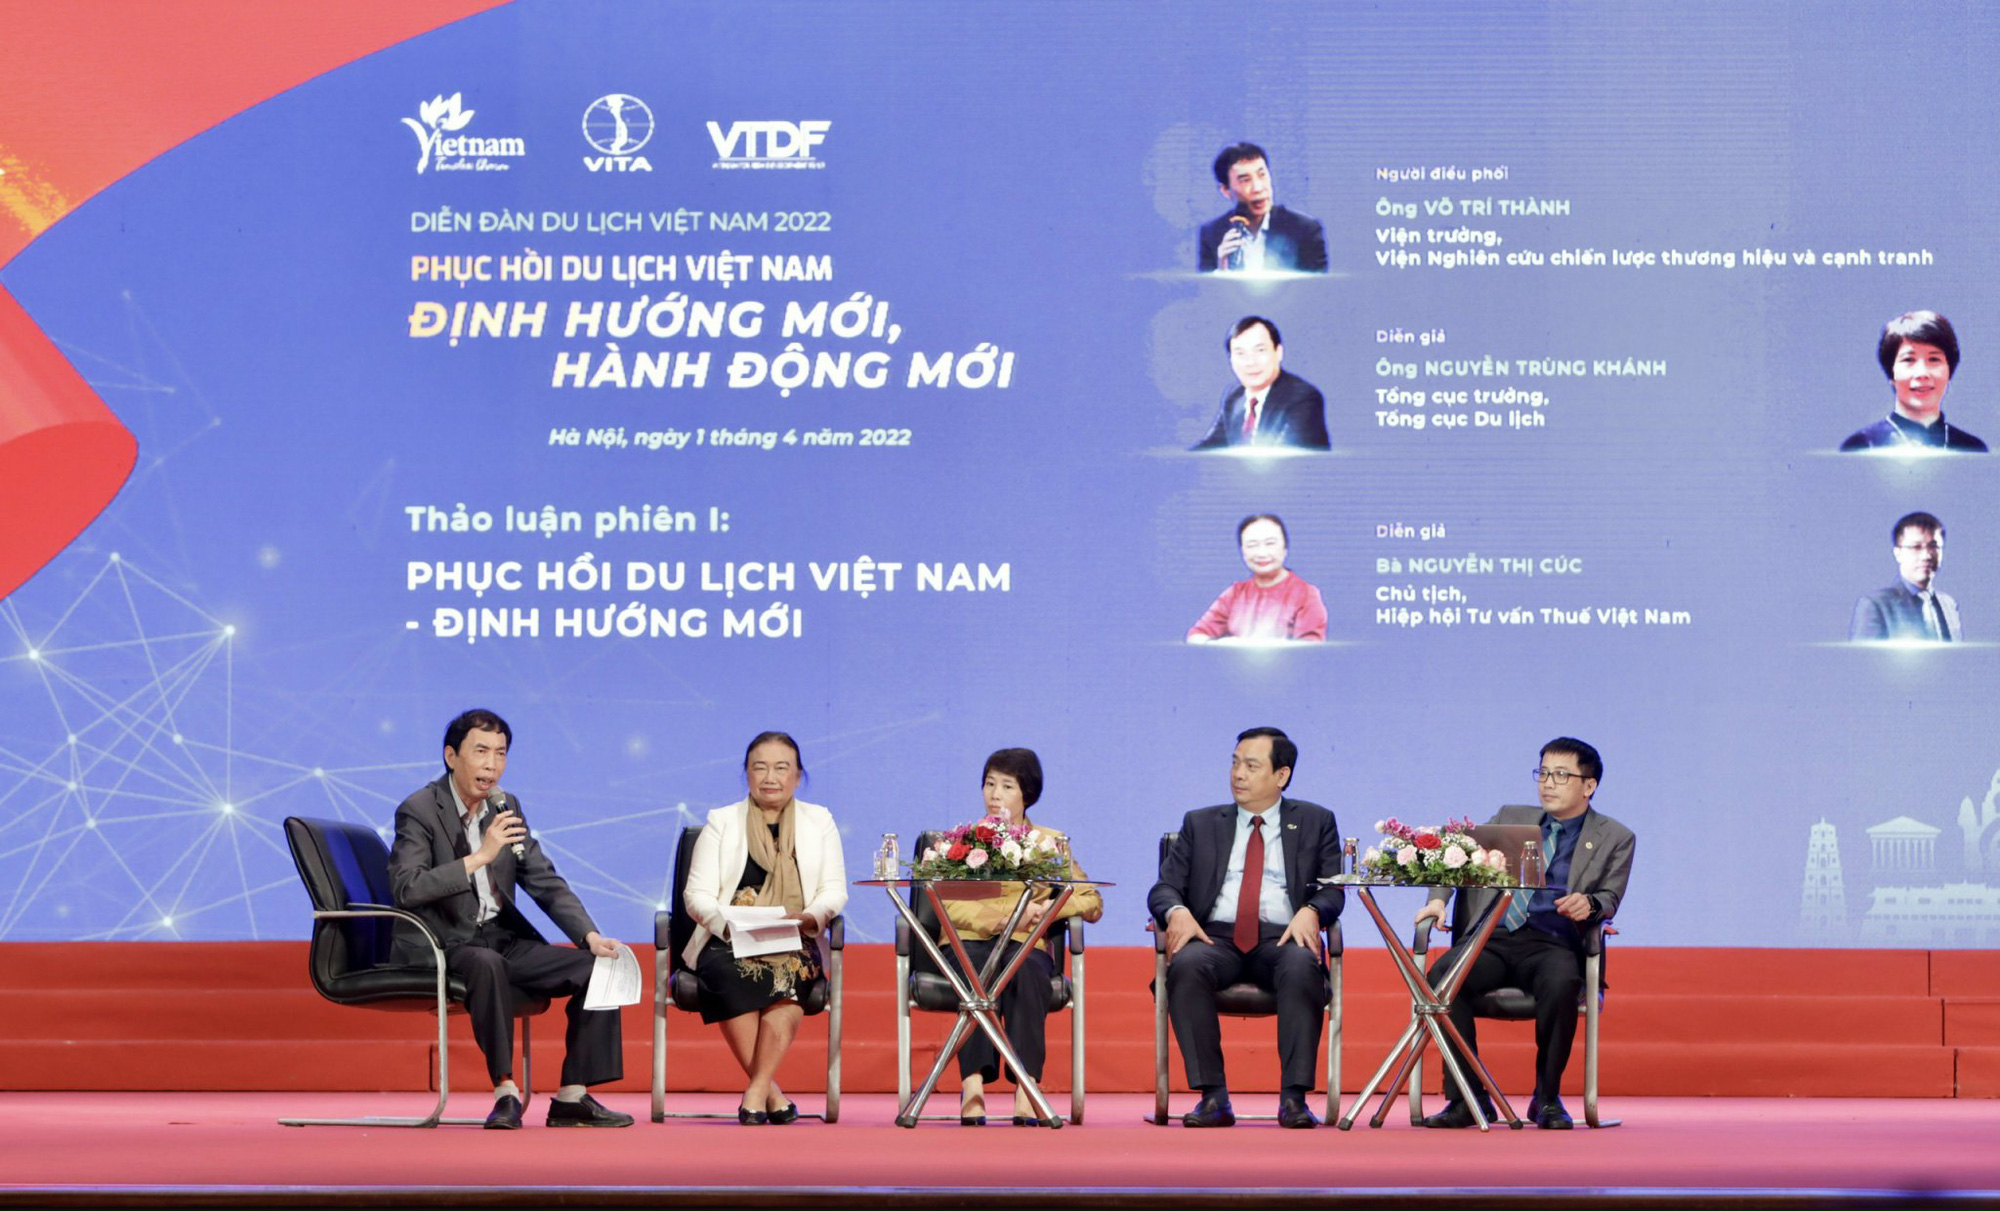 Thứ trưởng Đoàn Văn Việt: Tập trung vào các định hướng mới, hành động mới cho việc phục hồi và phát triển ngành du lịch Việt Nam - Ảnh 2.